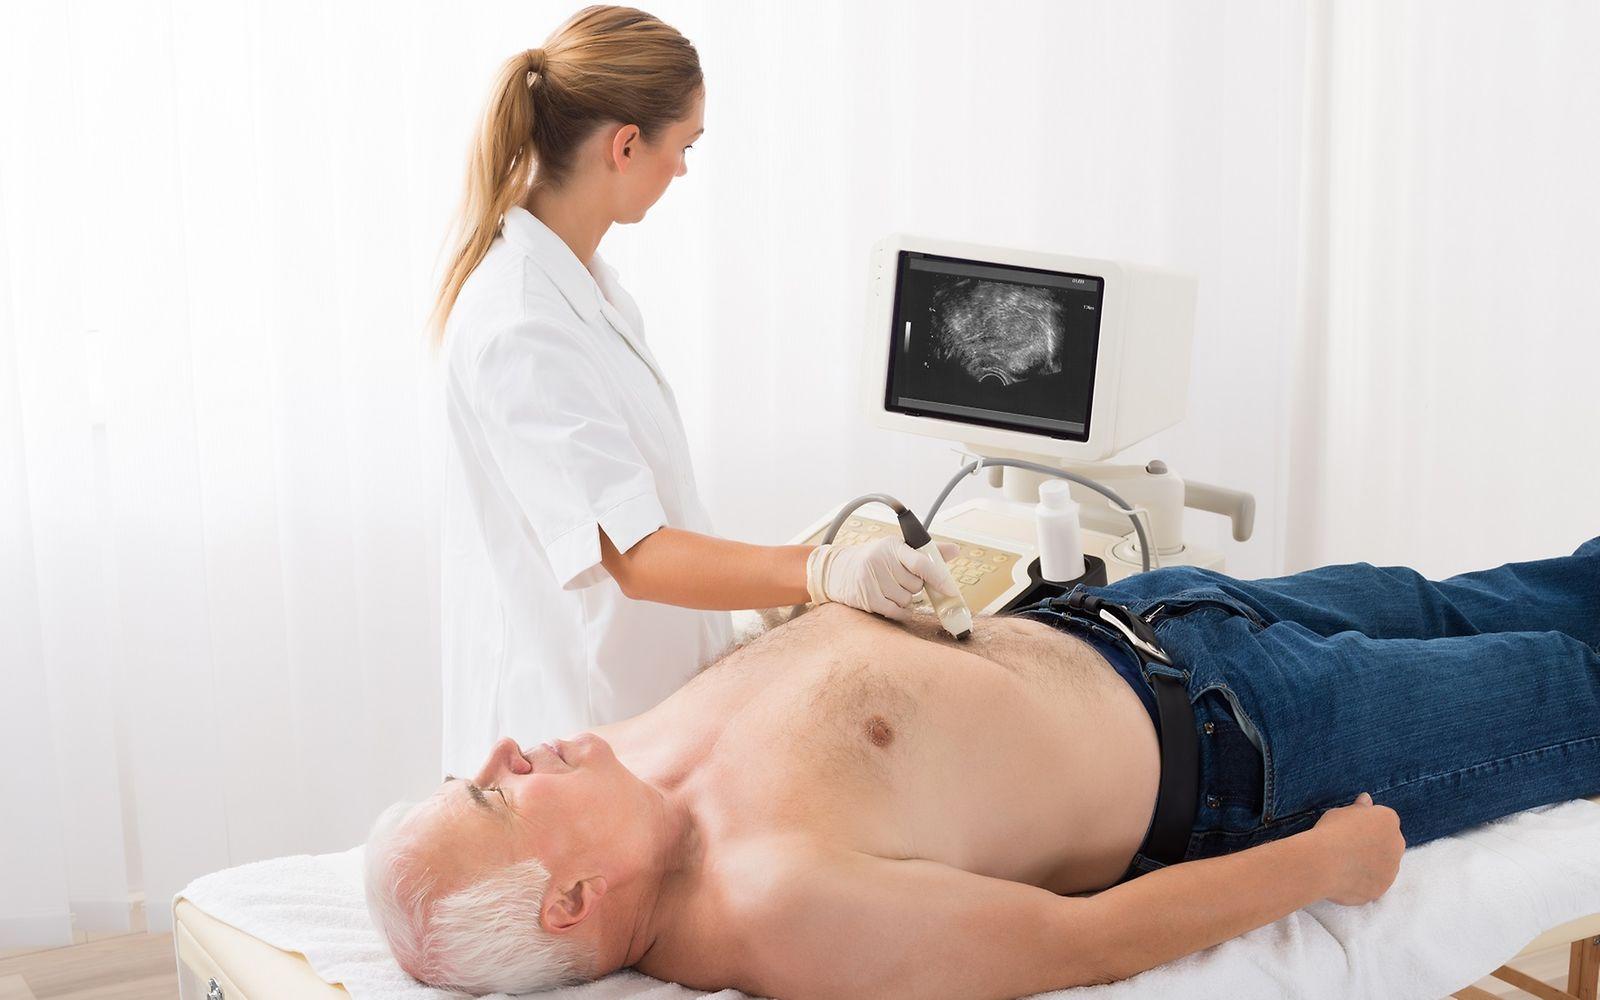 Ärztin untersucht Mann via Ultraschall-Screening am Bauch